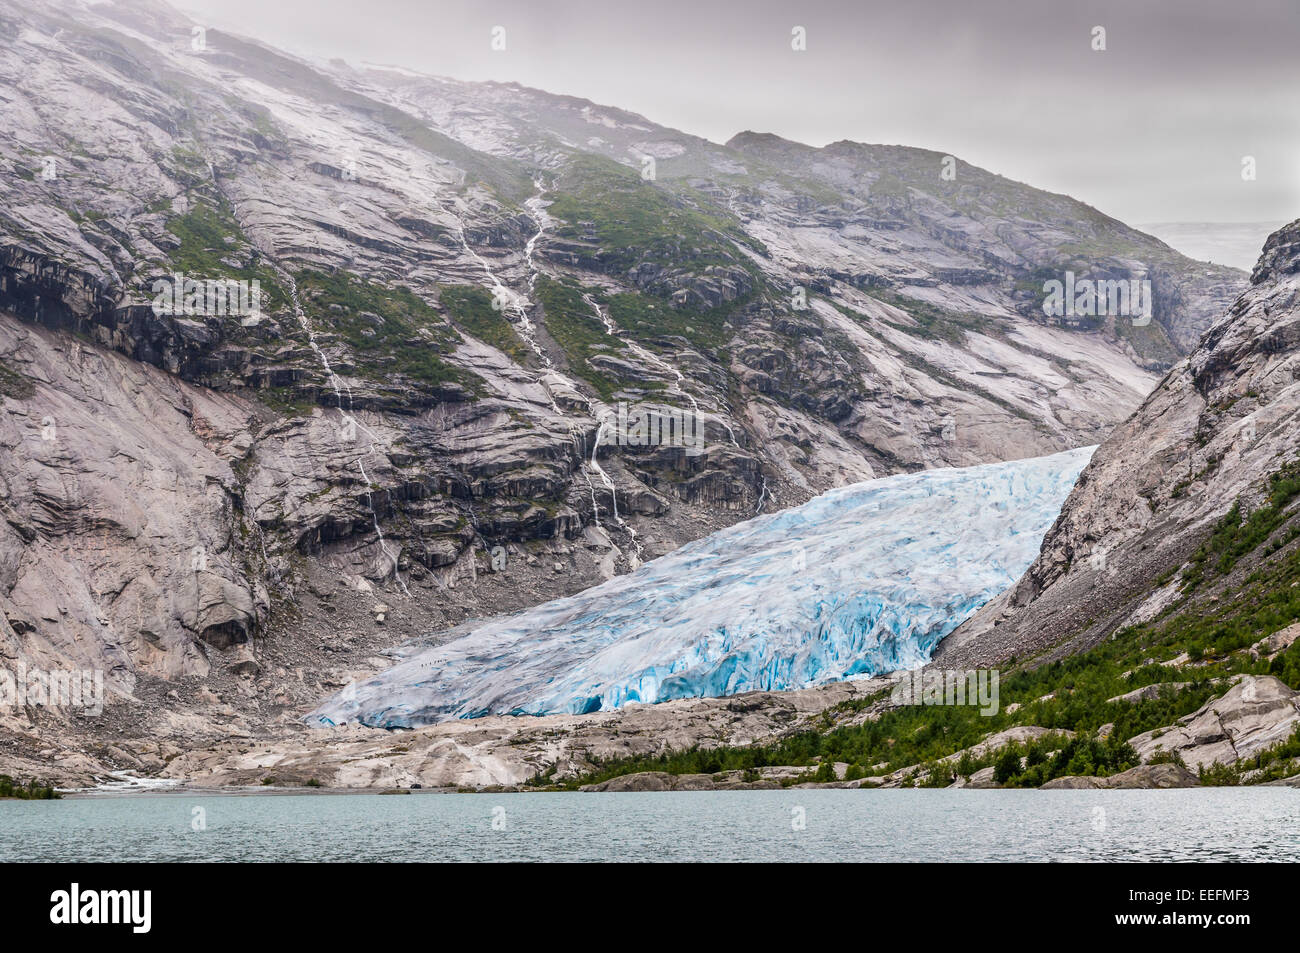 Glacier Jostedalsbreen en Norvège - fondre à cause du réchauffement climatique. Gauche sur un glacier visible groupe de touristes. Banque D'Images